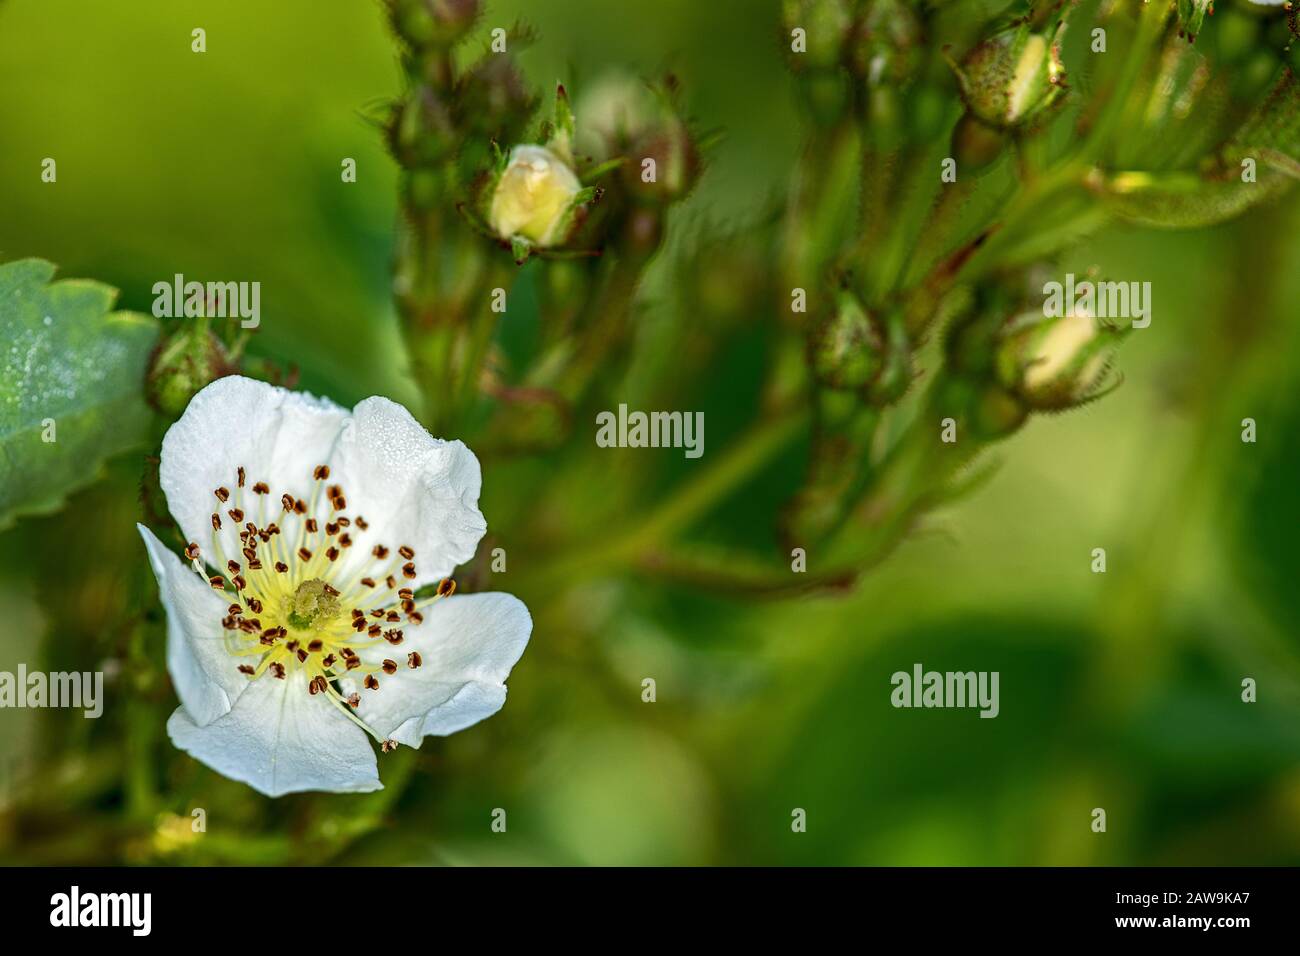 Rosa canina, comunemente conosciuta come la rosa del cane, davanti a un fiore aperto, nella parte posteriore molte gemme Foto Stock